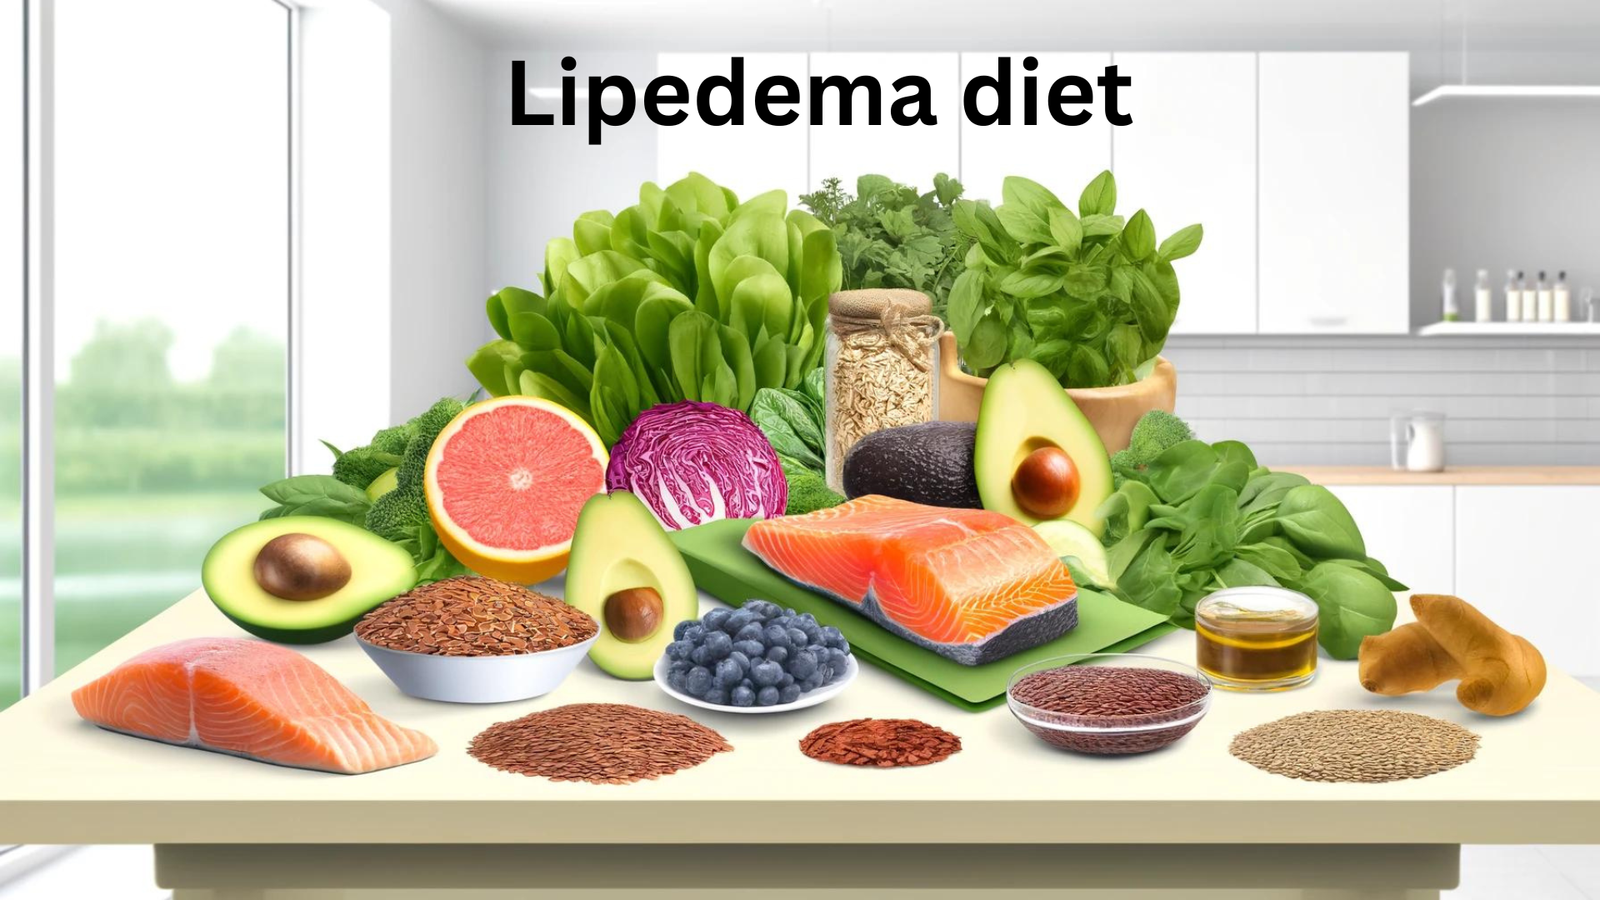 Lipedema diet